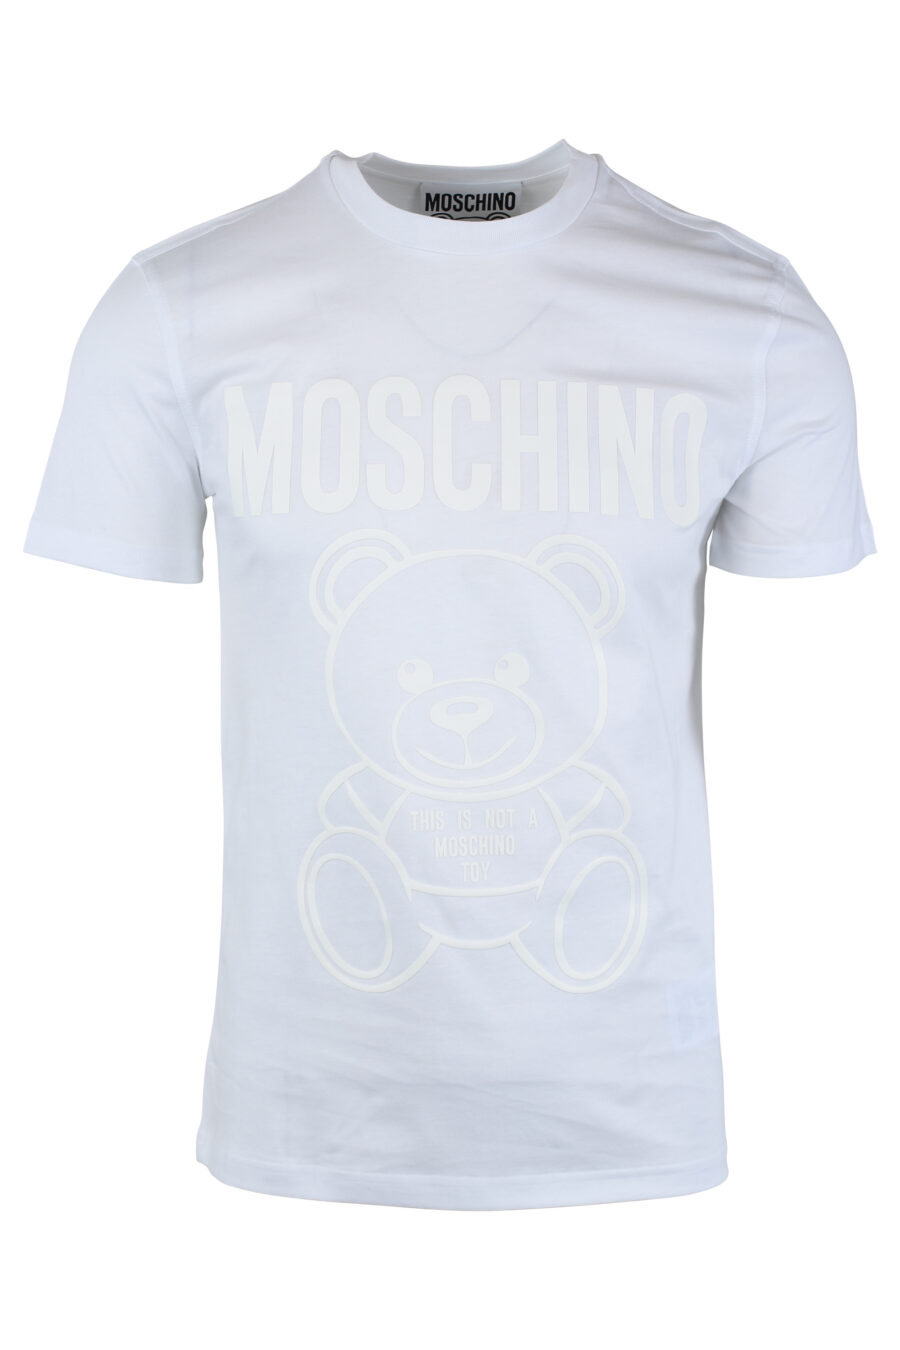 T-shirt branca com maxilogo de urso monocromático - IMG 1657